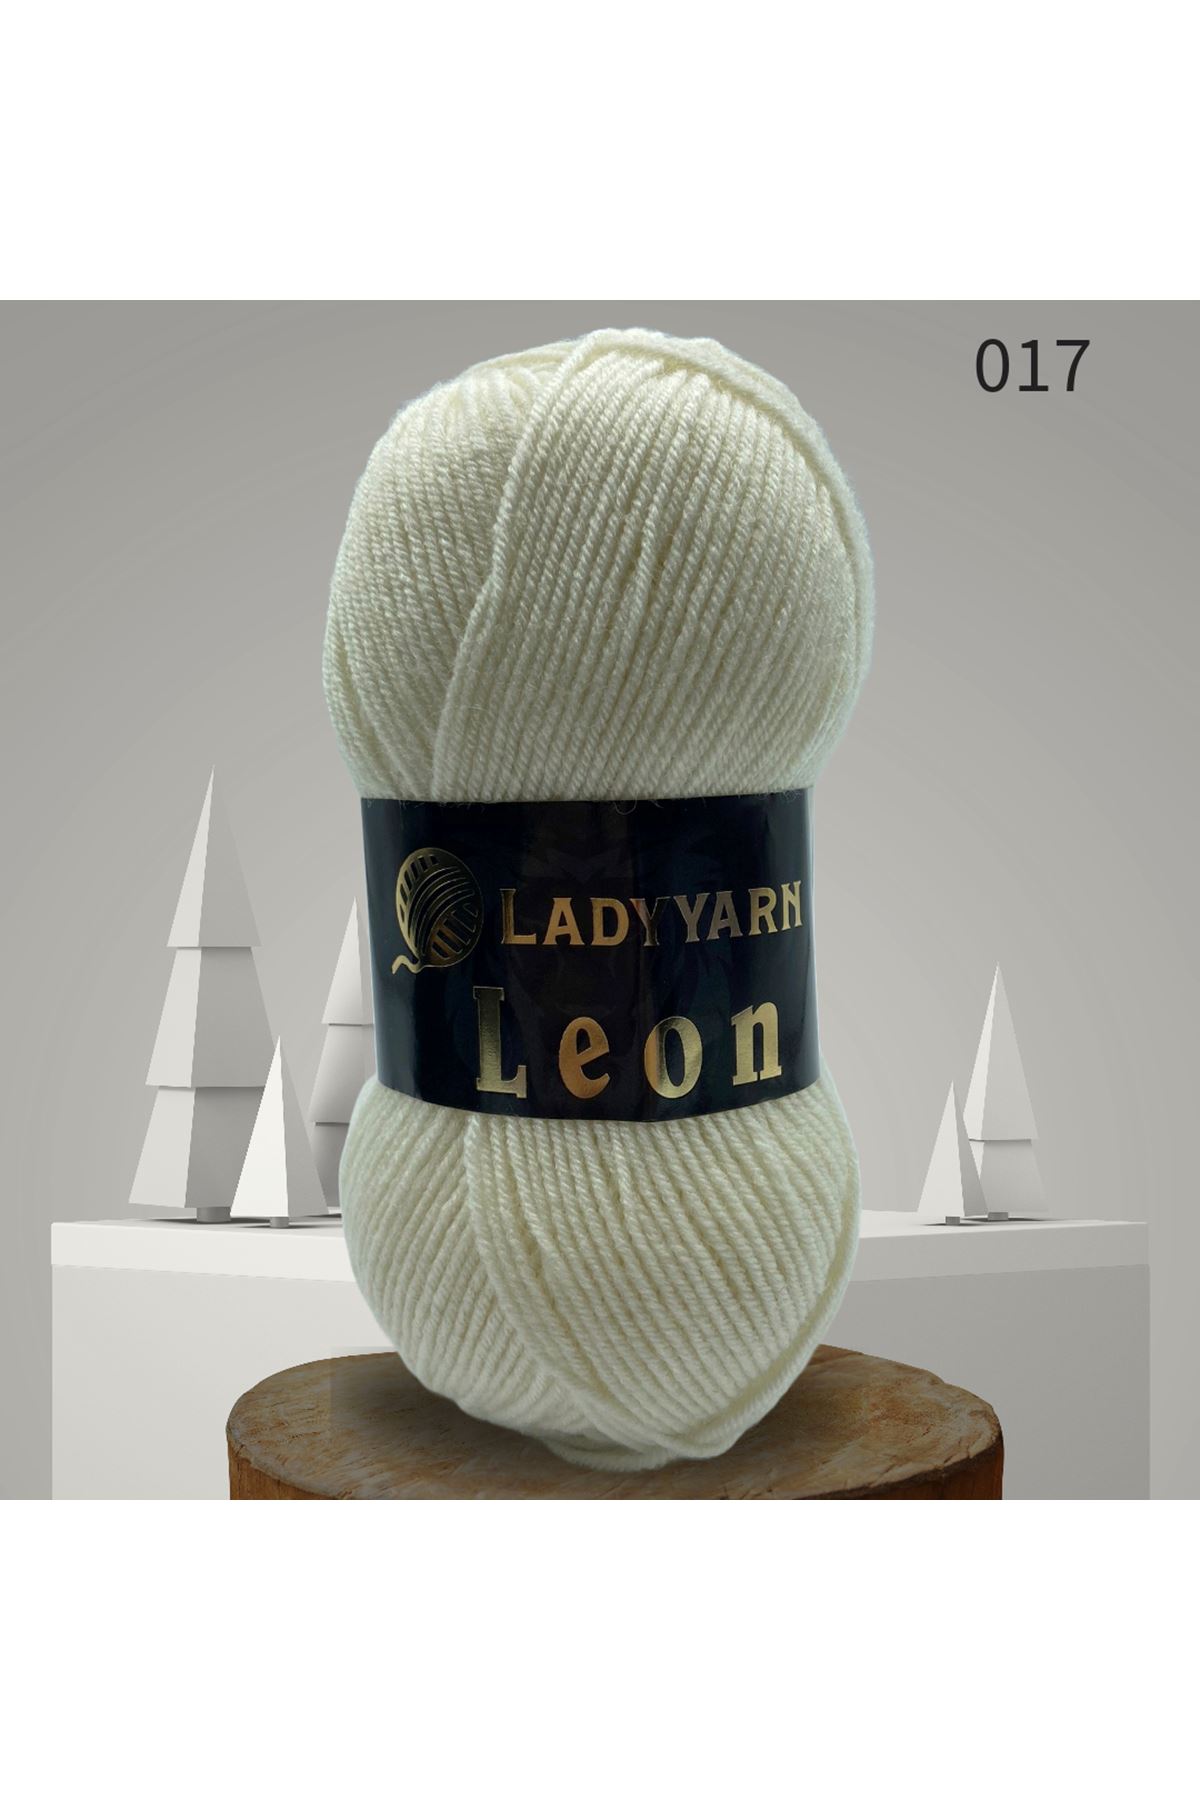 Lady Yarn Leon %49 Yünlü 017 Kemik